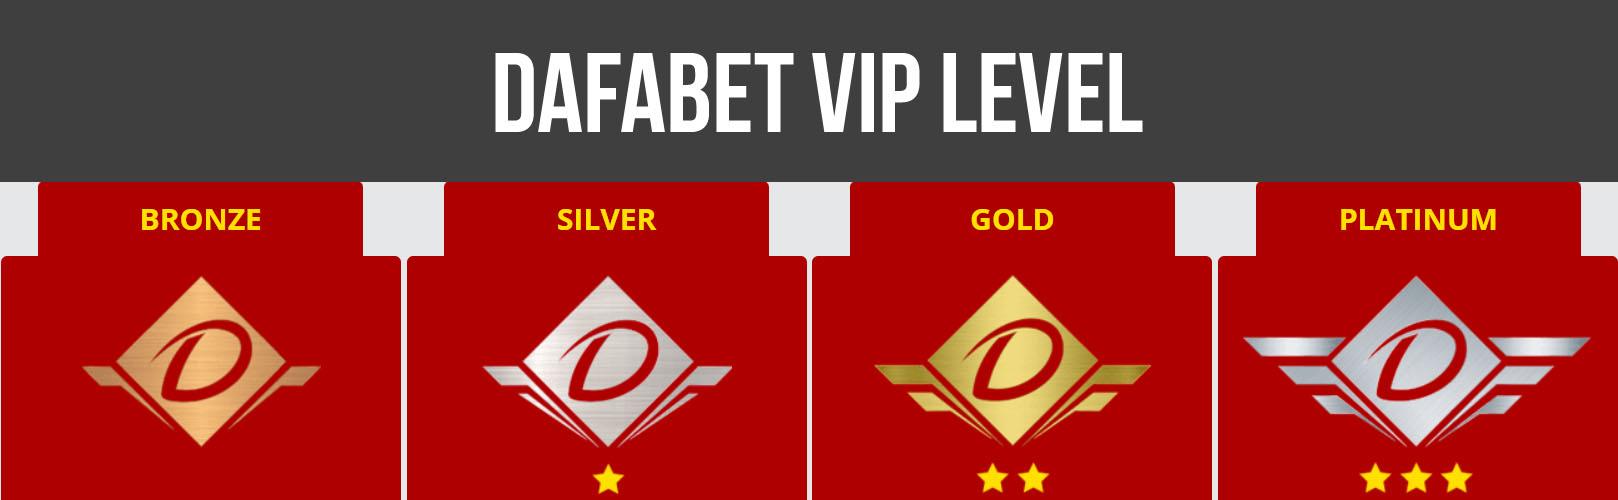 Dafabet VIP Level